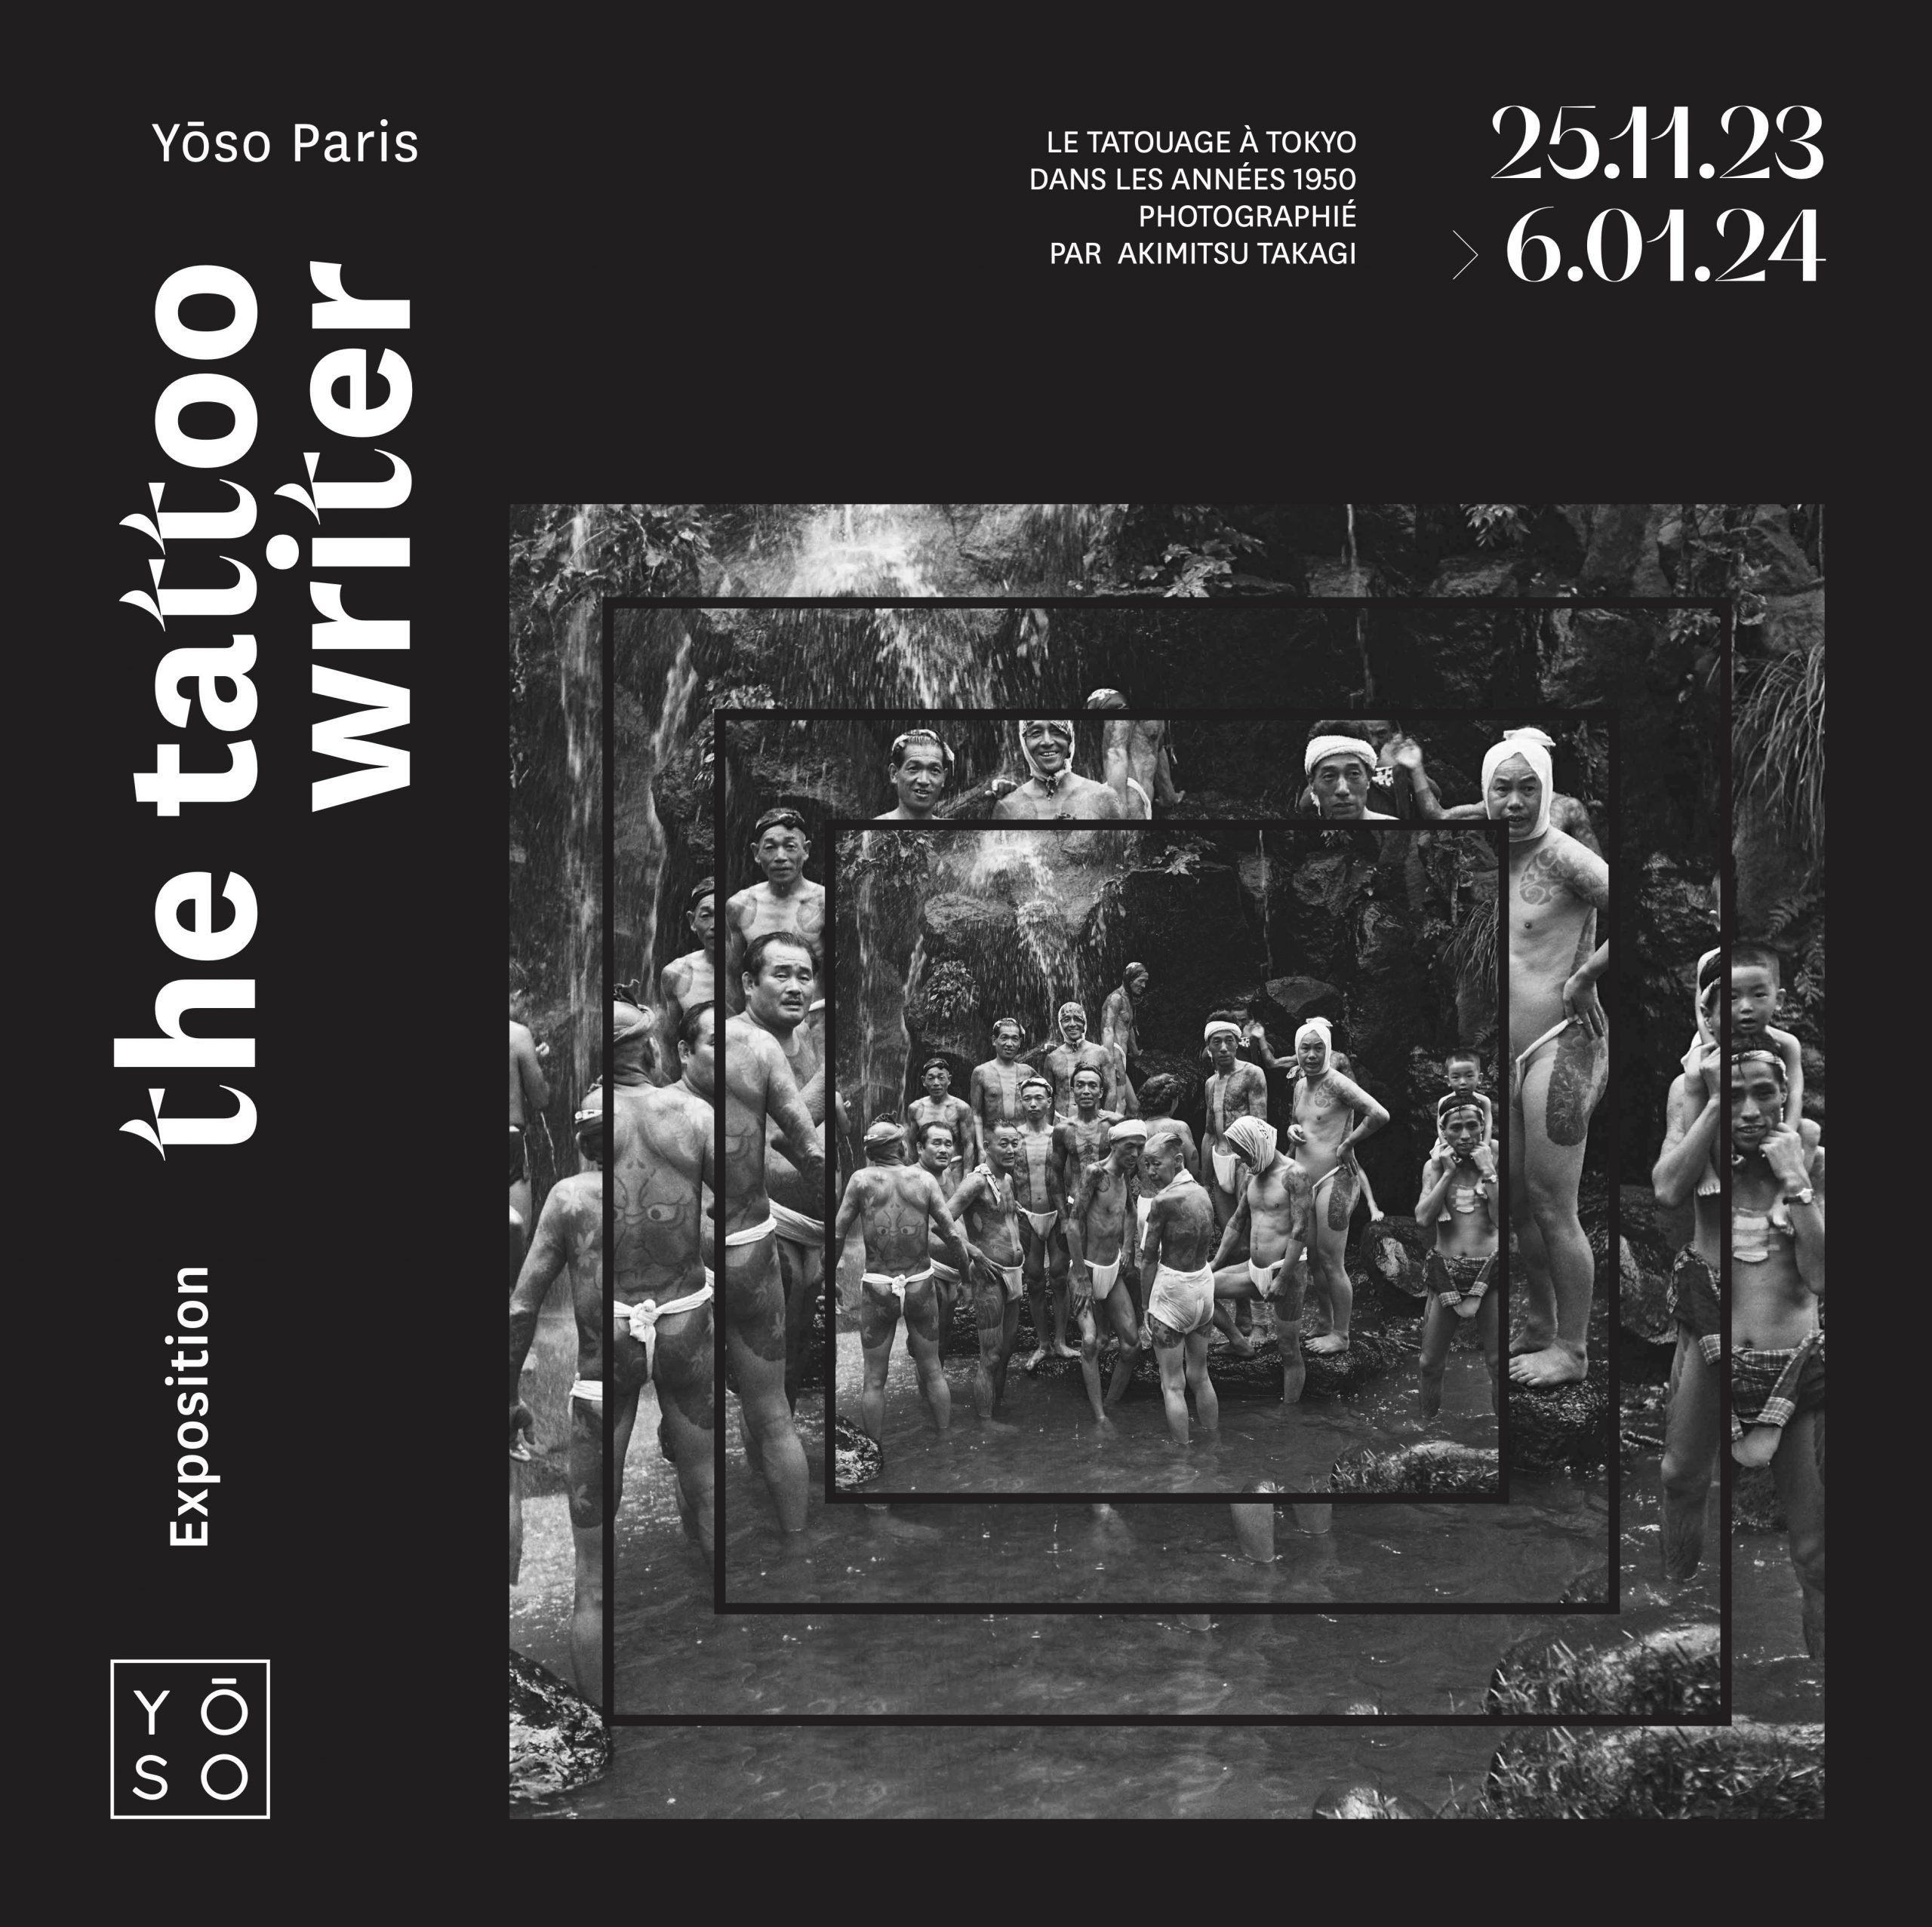 Paris : Exposition photographique chez YŌSO